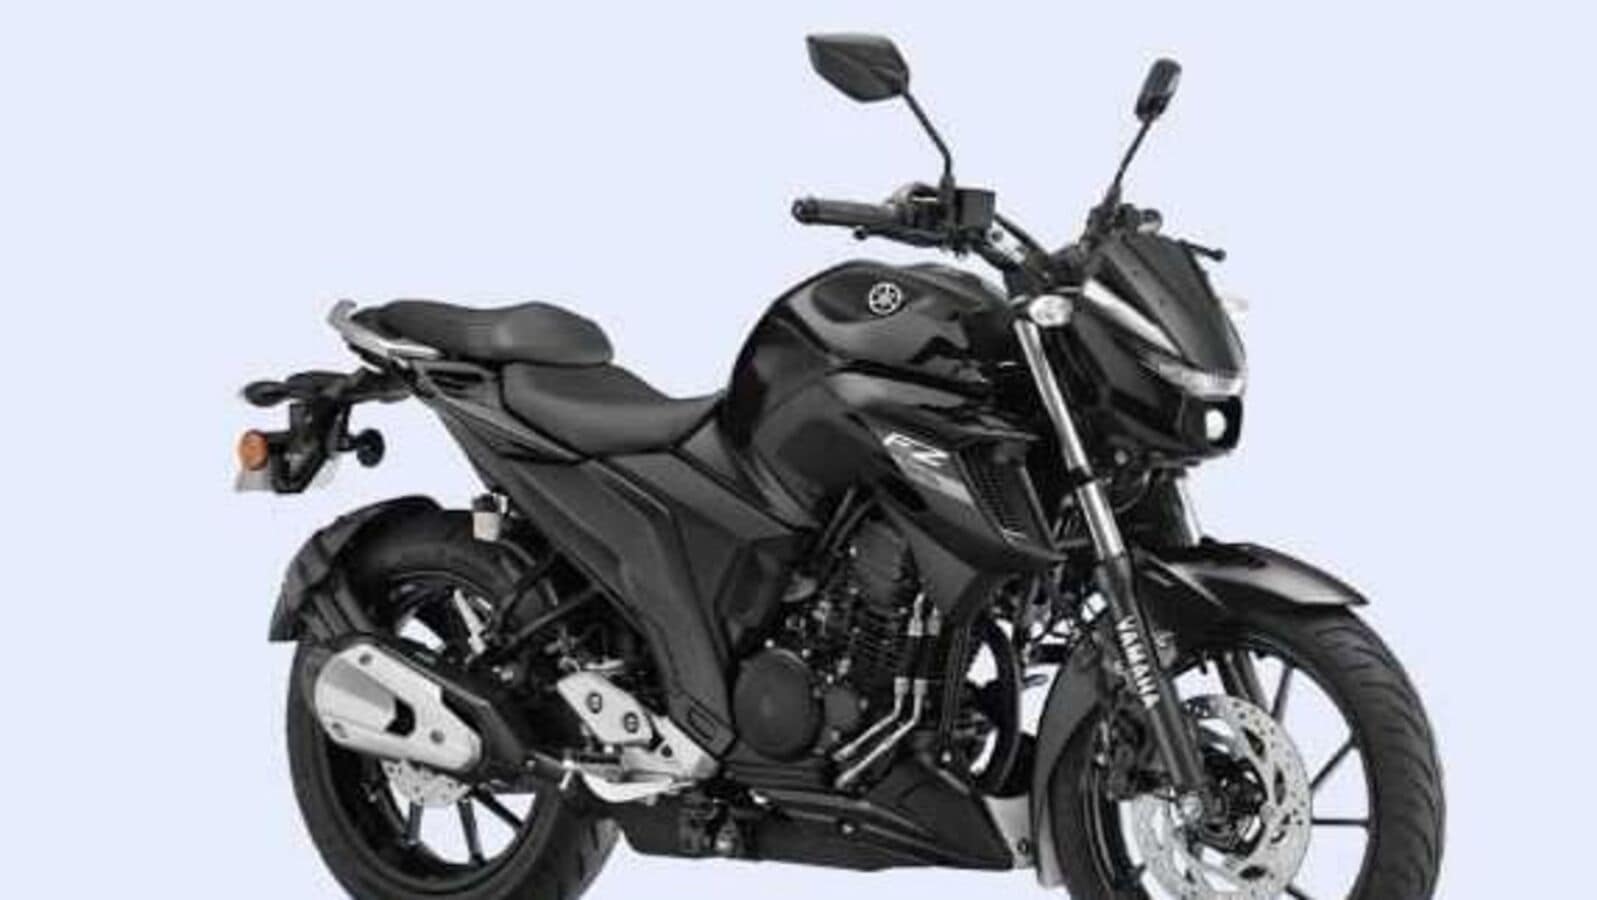 yamaha motorcycles 2022